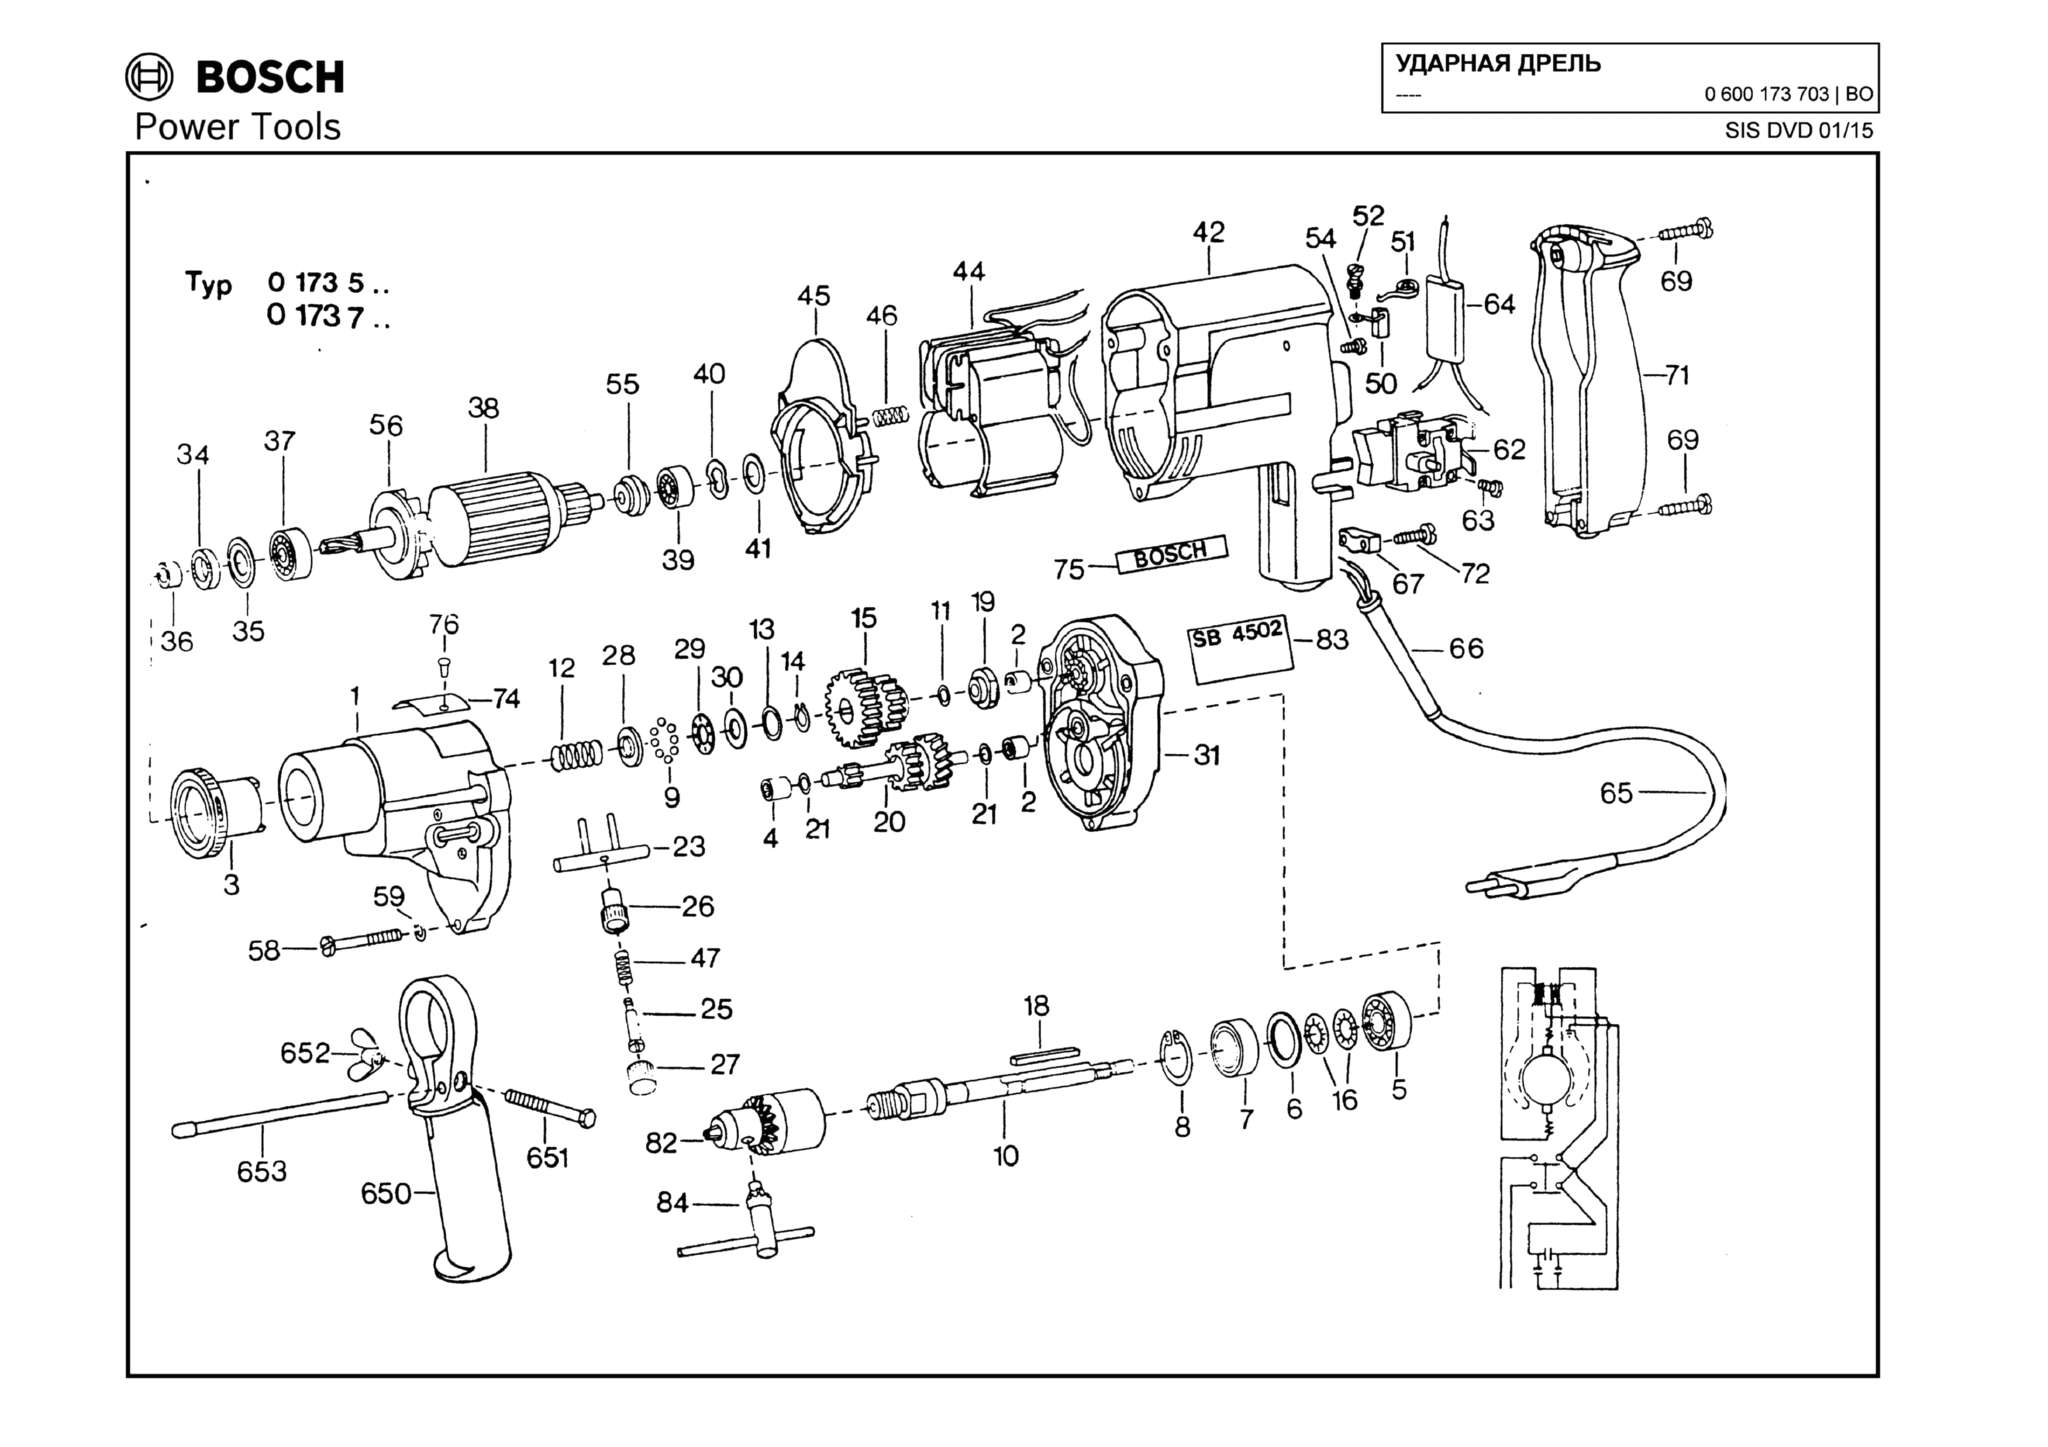 Запчасти, схема и деталировка Bosch (ТИП 0600173703)